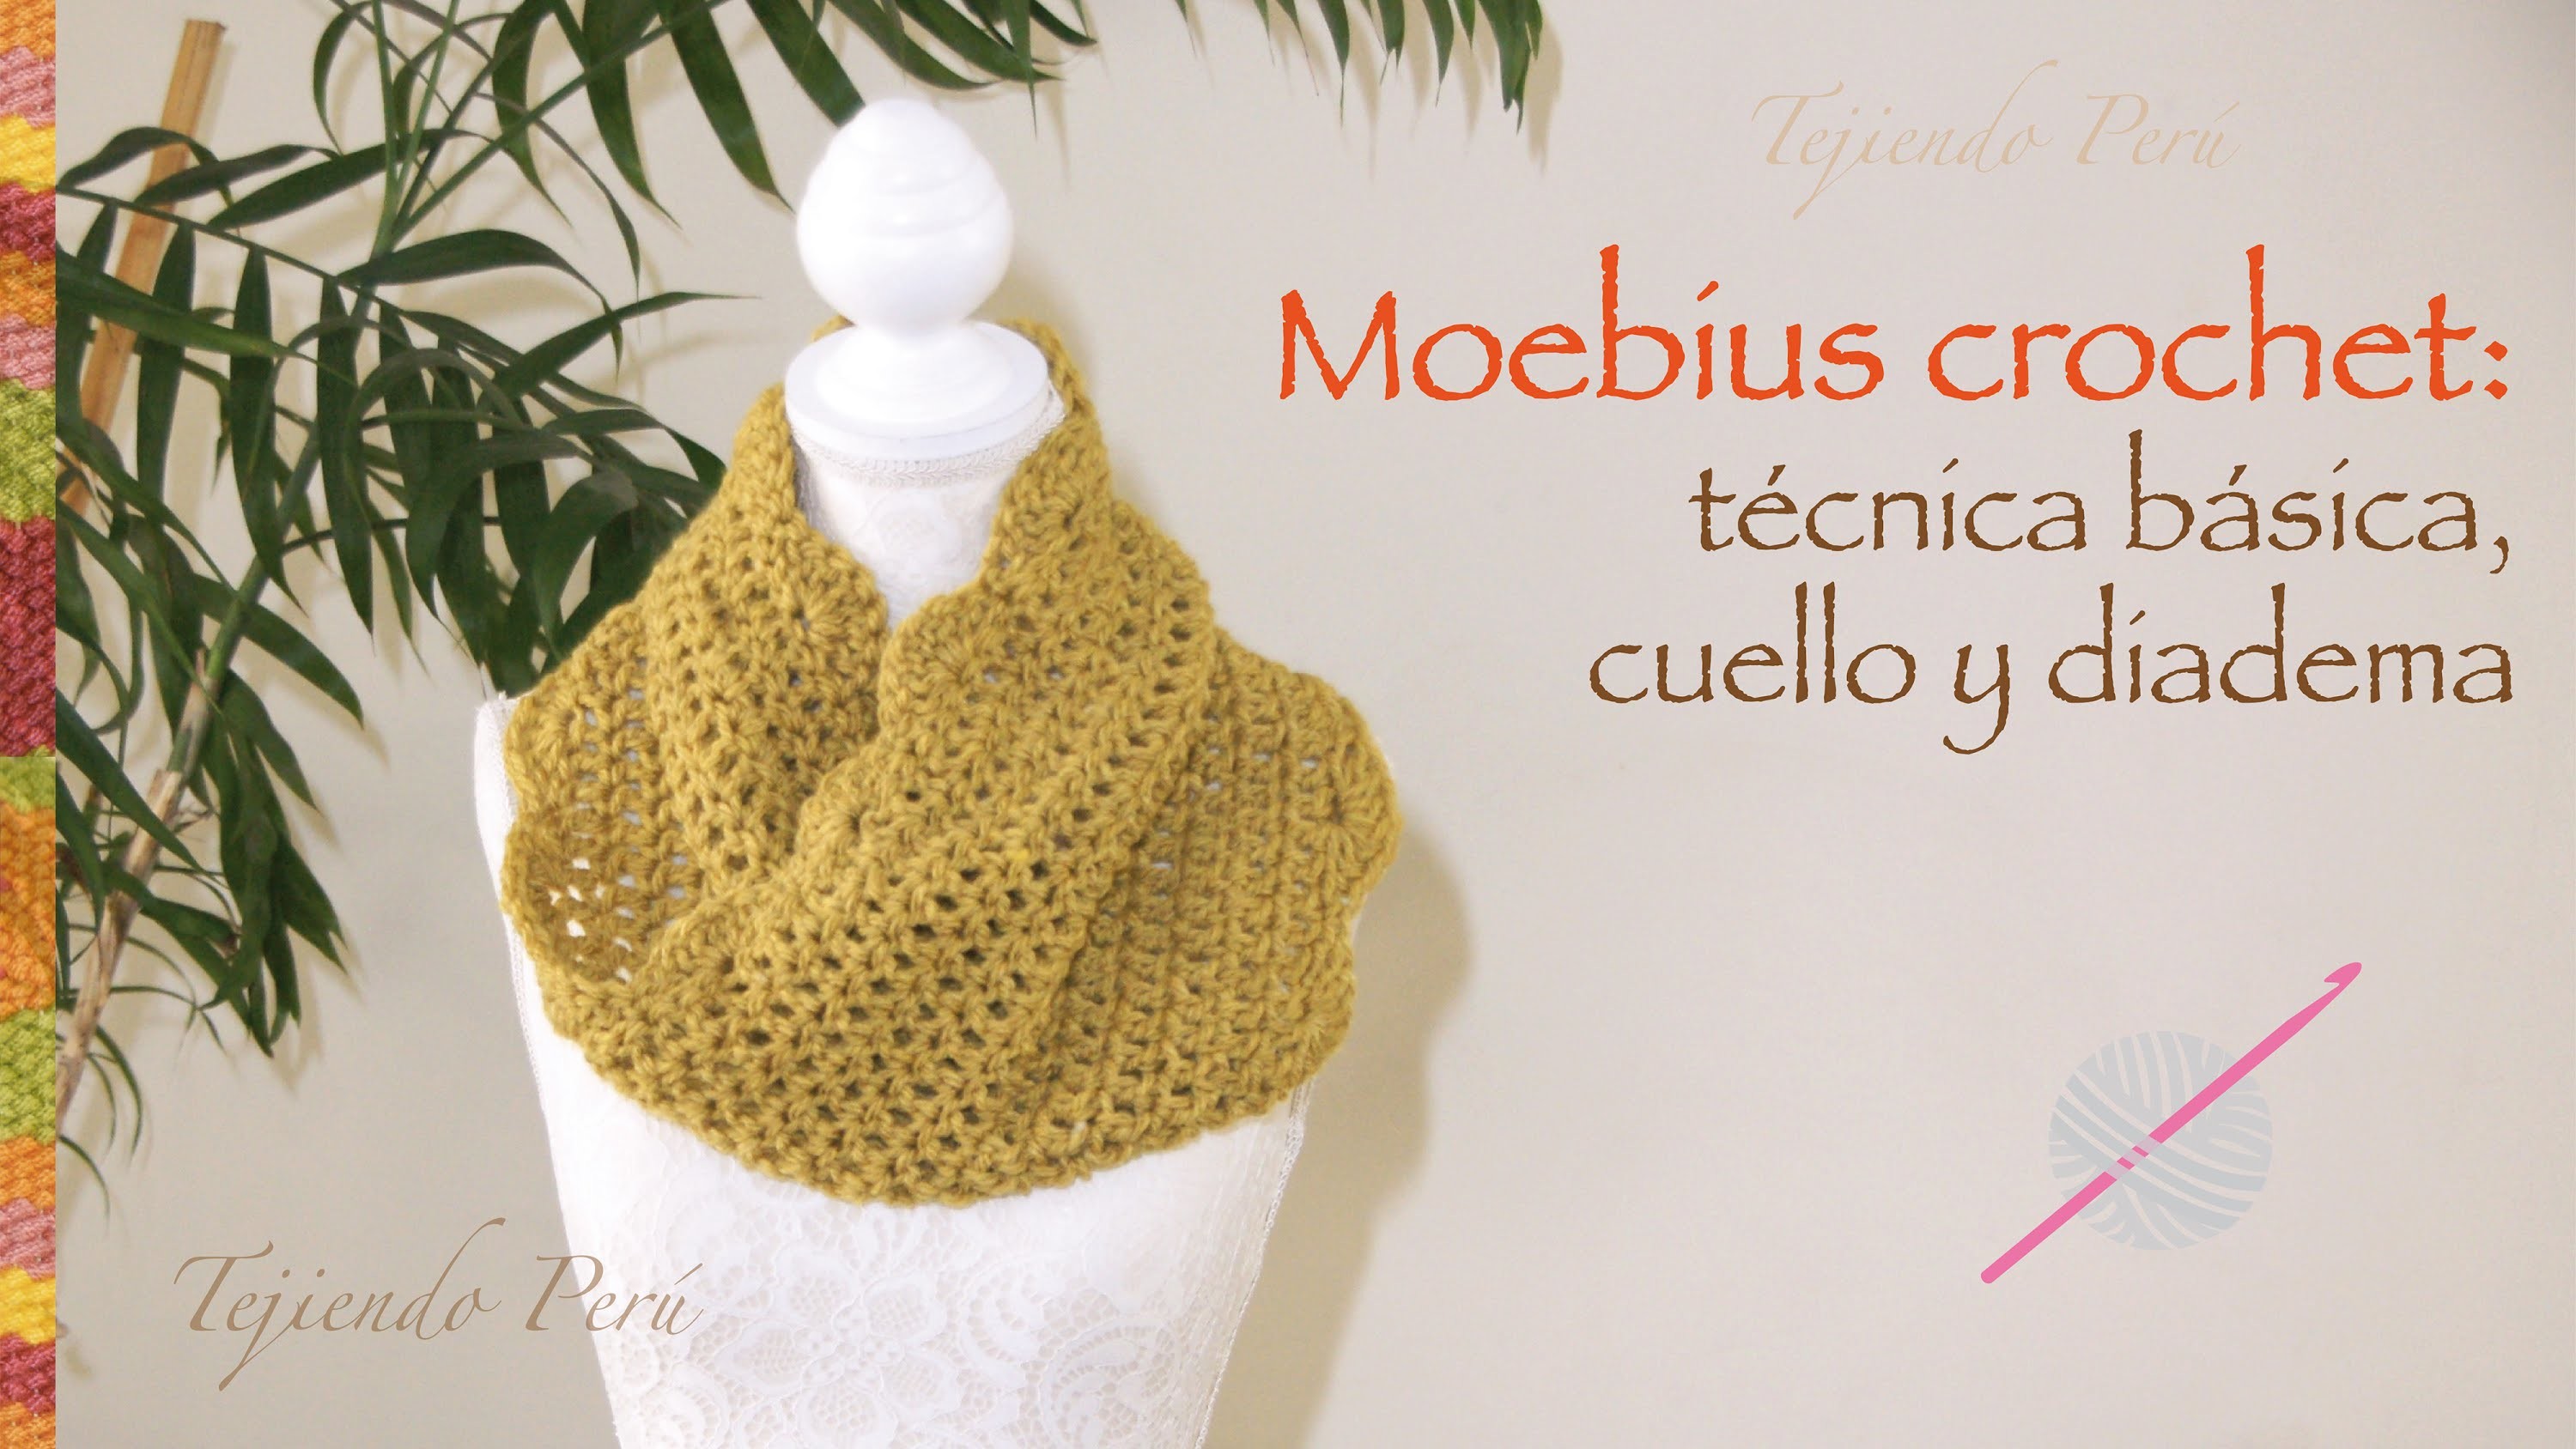 Crochet moebius: técnica básica y, además, cuello o bufanda corta infinita y diadema o vincha. :)